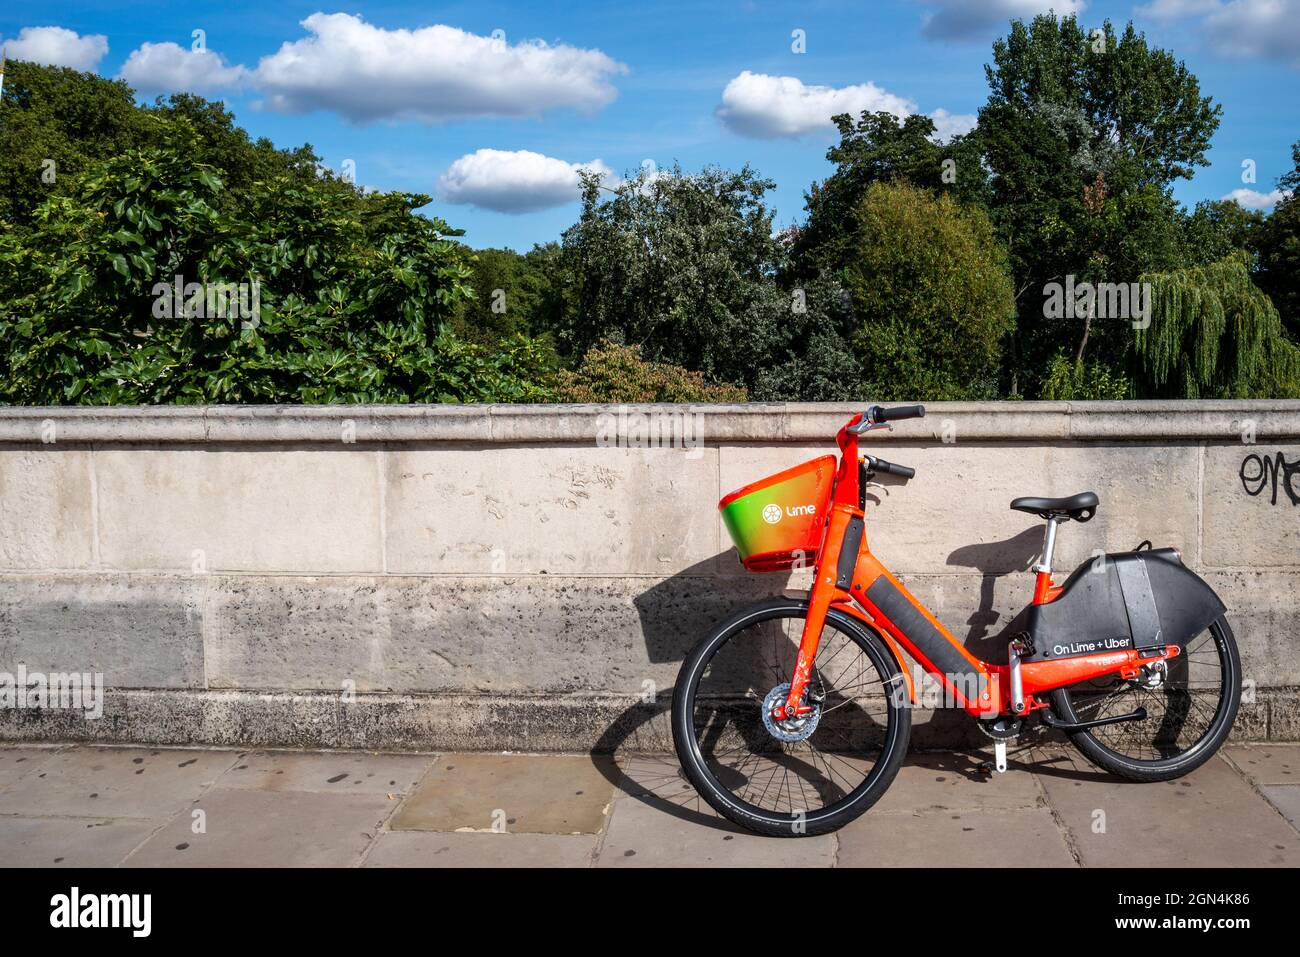 Bicicletta elettrica in calce a noleggio, presso un parco a Westminster, Londra. Noleggio biciclette pubblico nella città di Londra. Bici isolata e solitaria contro il muro Foto Stock